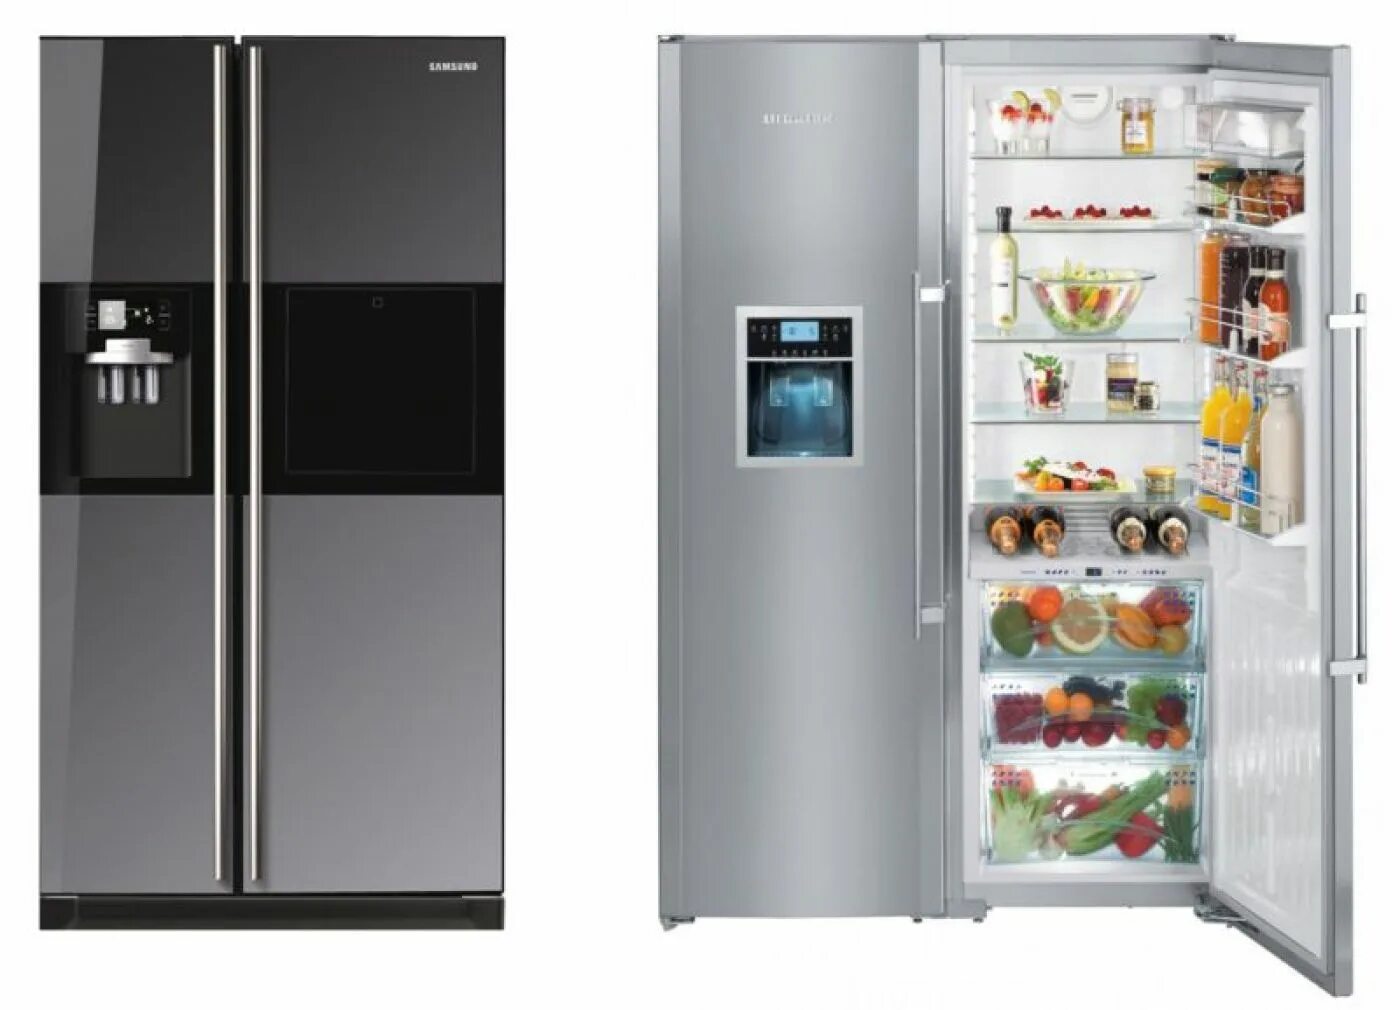 Двойной холодильник. Двухкамерный холодильник. Большой двухкамерный холодильник. Импортный холодильник двухкамерный. Купить холодильник в алматы